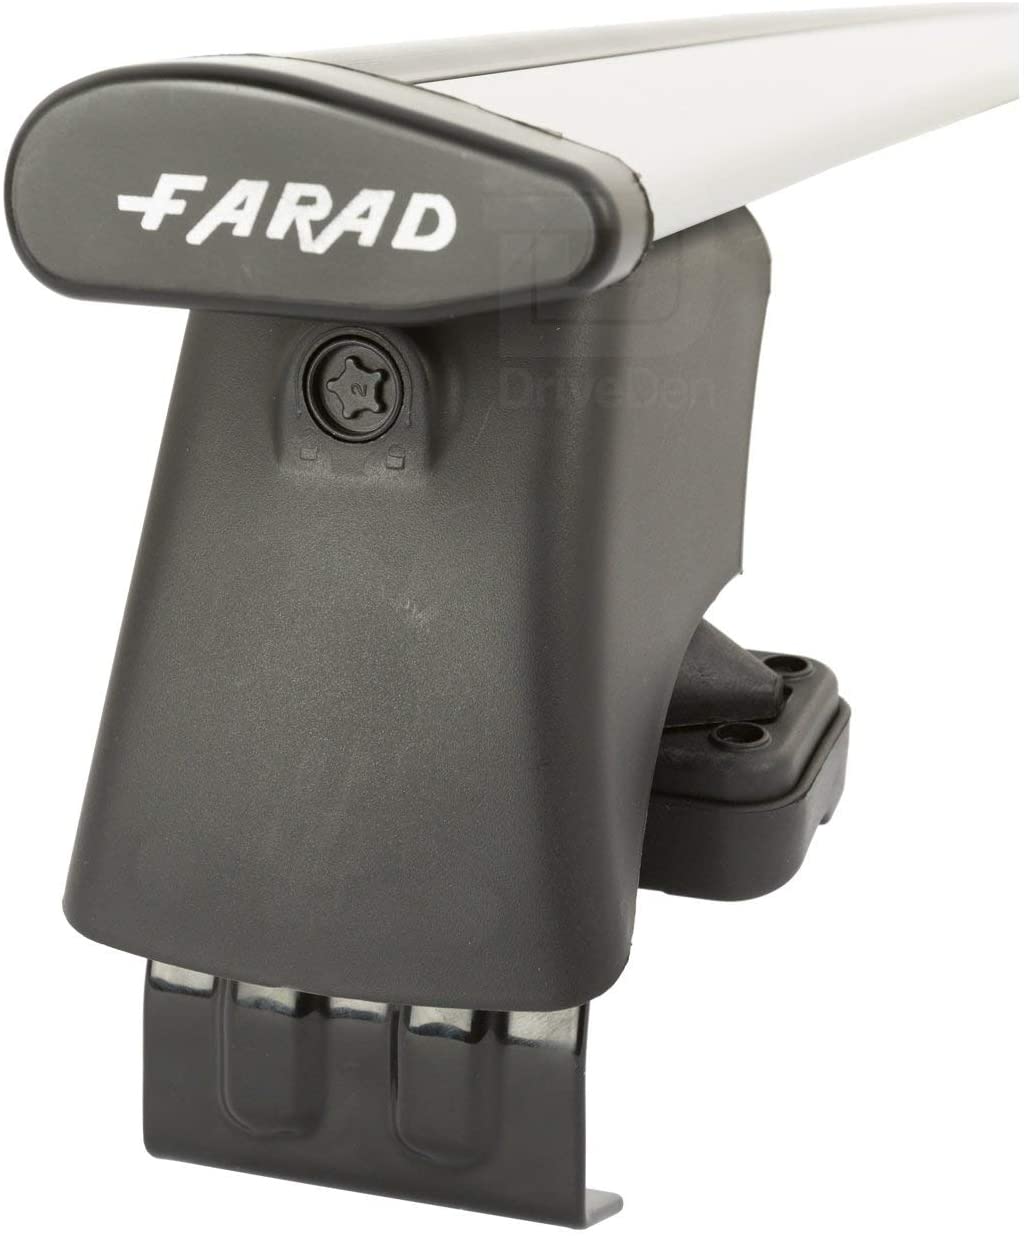 FARAD-Kit H2 per barre portatutto - Citroen C3 2002-2009 (senza corrimano)